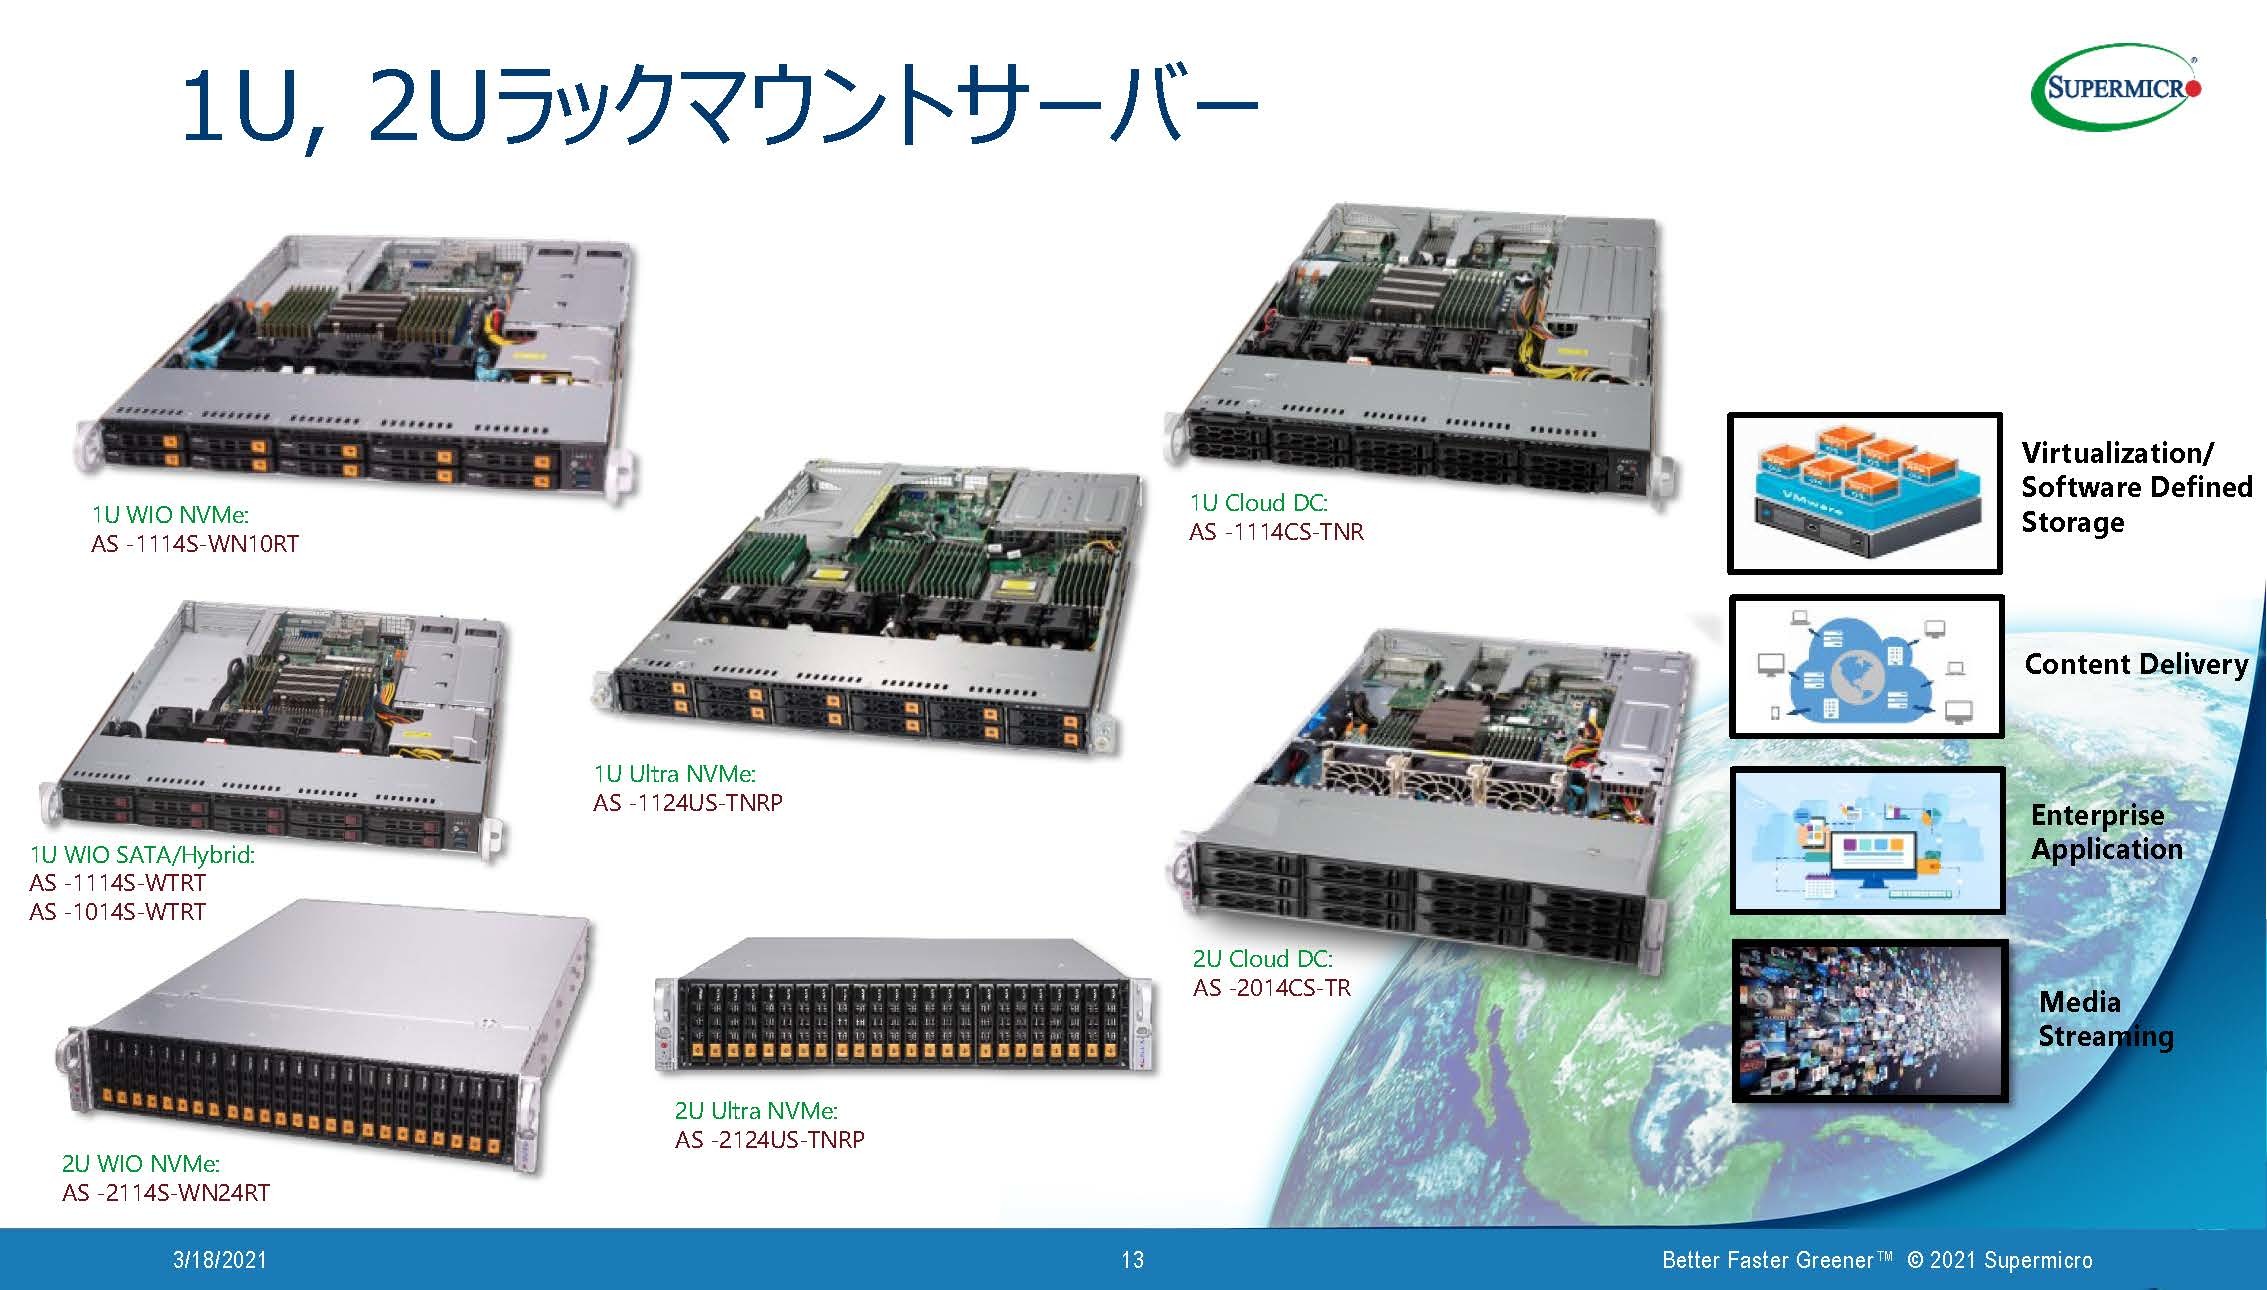 高パフォーマンス性を誇るamdのサーバ向けcpuを生かし Supermicroは豊富なラインアップのサーバ製品群で幅広いニーズに対応 Zdnet Japan